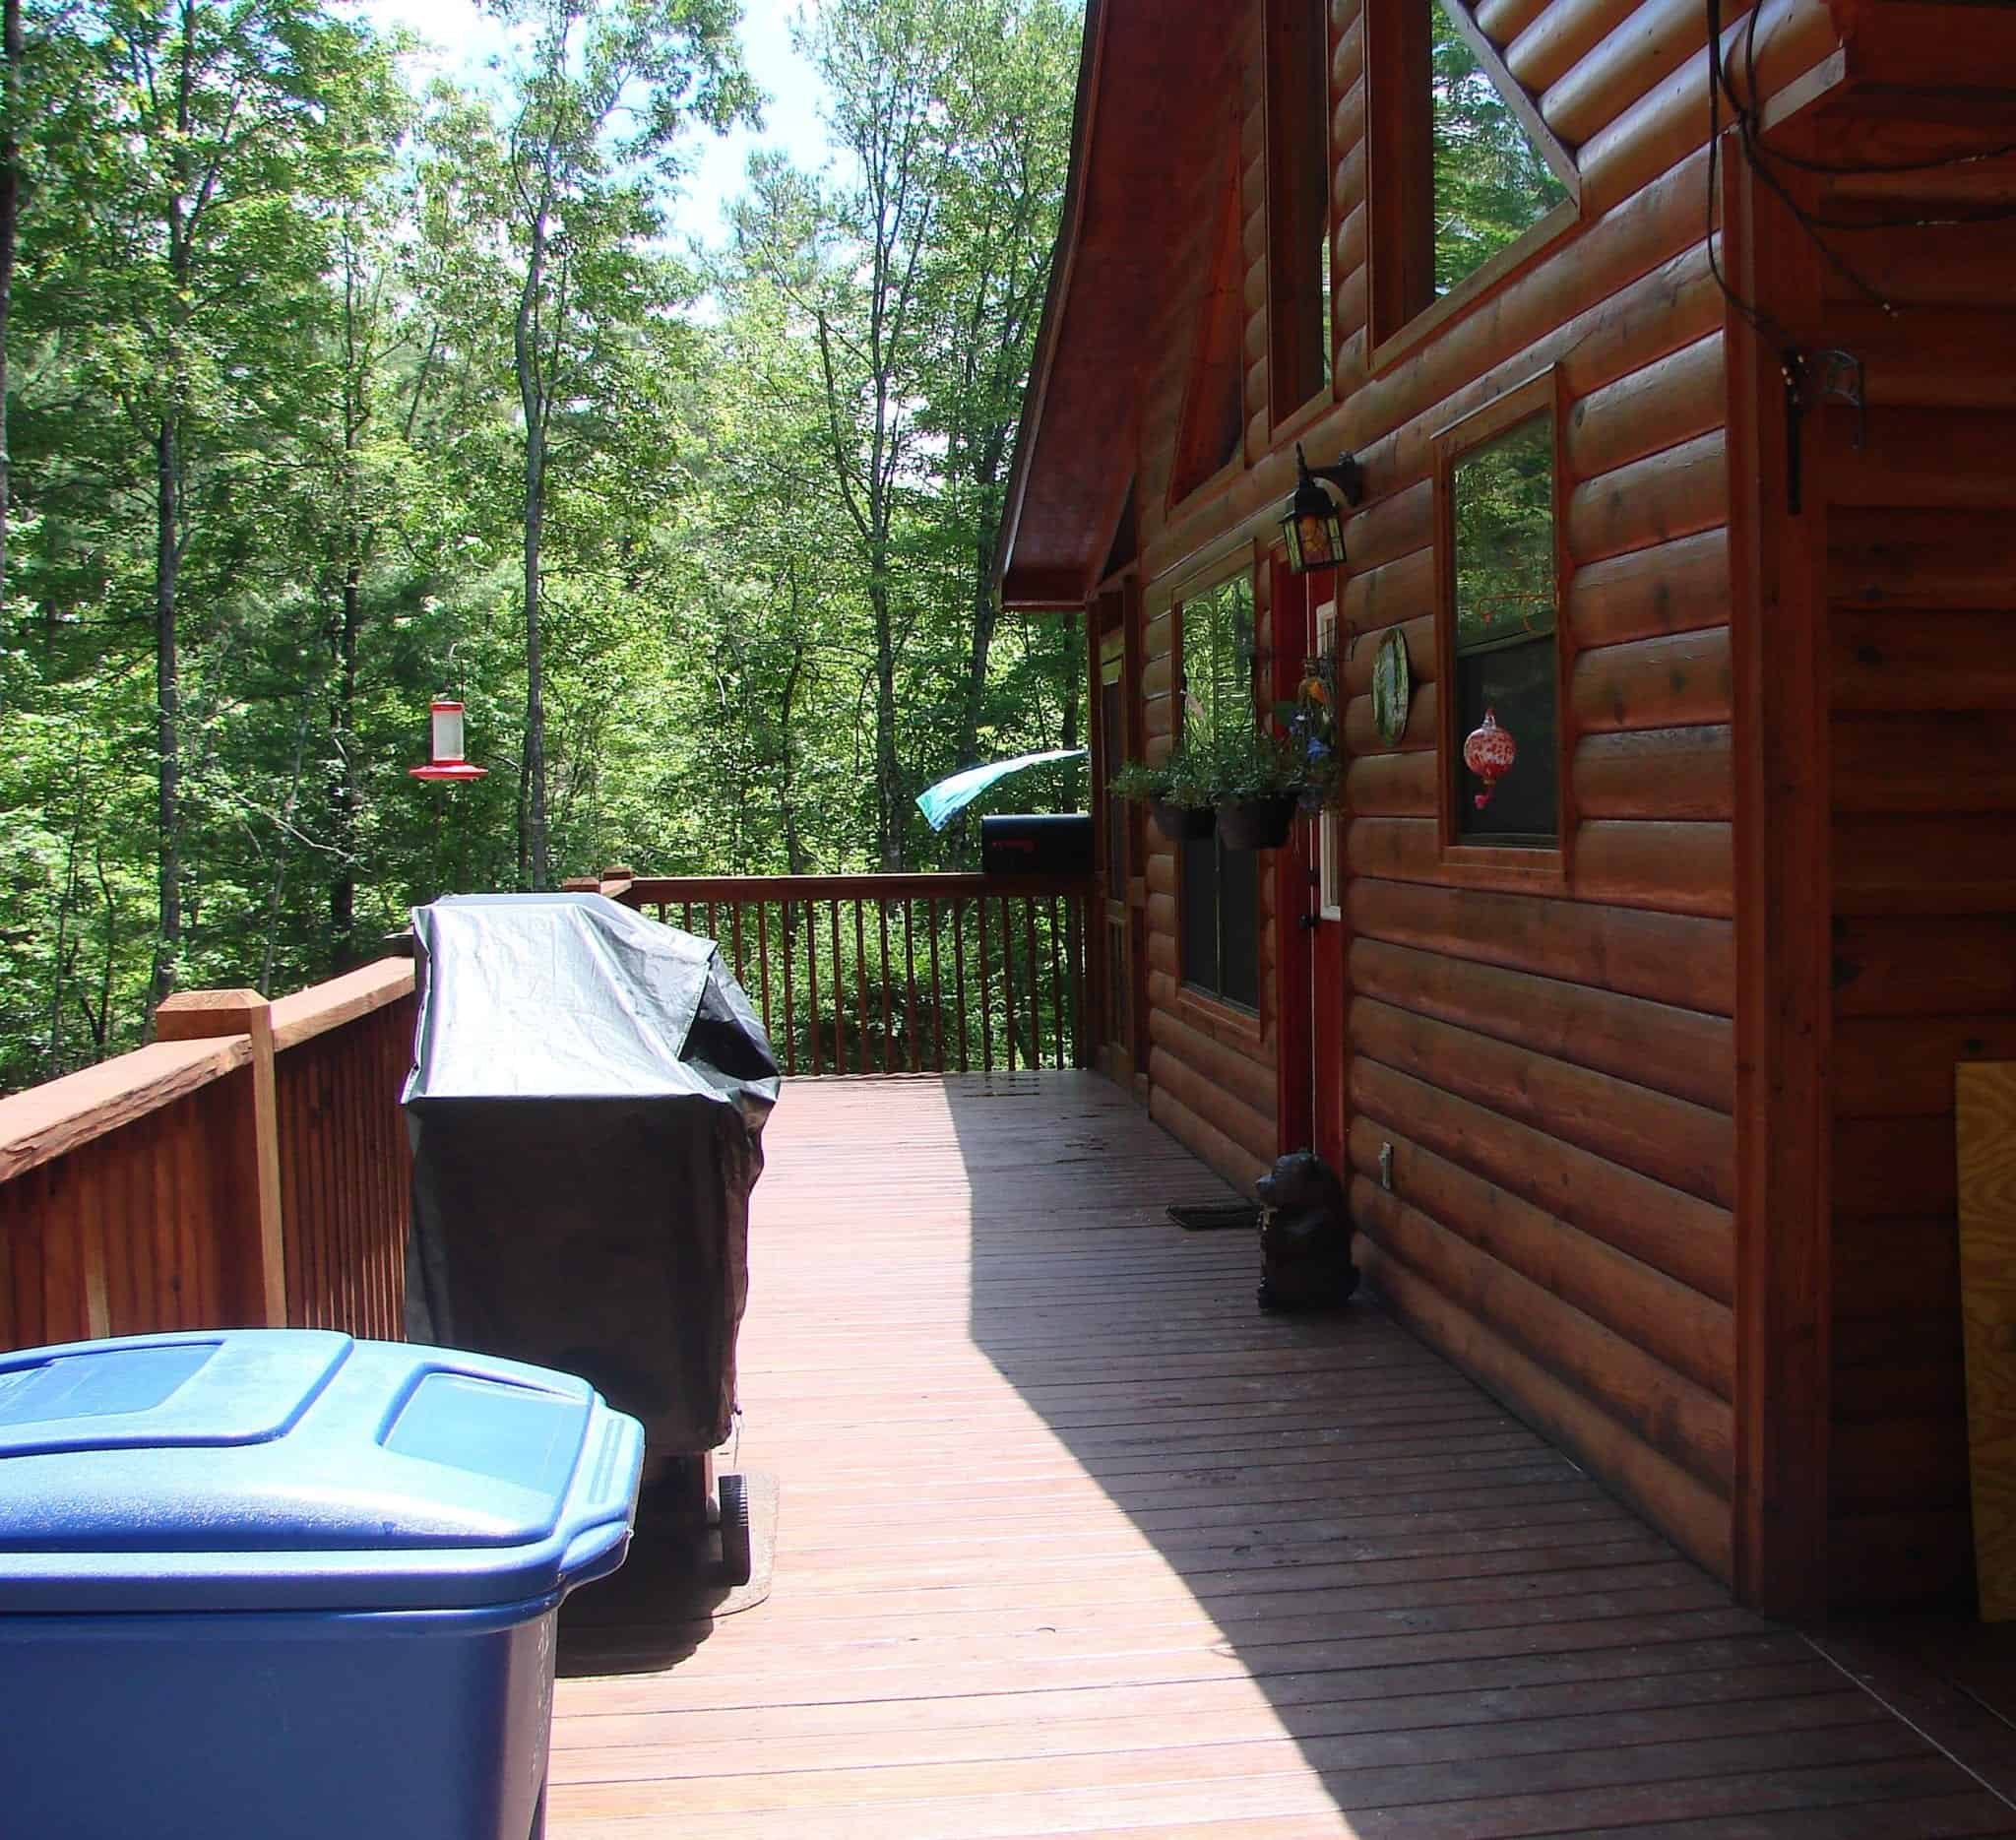 A beautiful log cabin in Murphy NC.